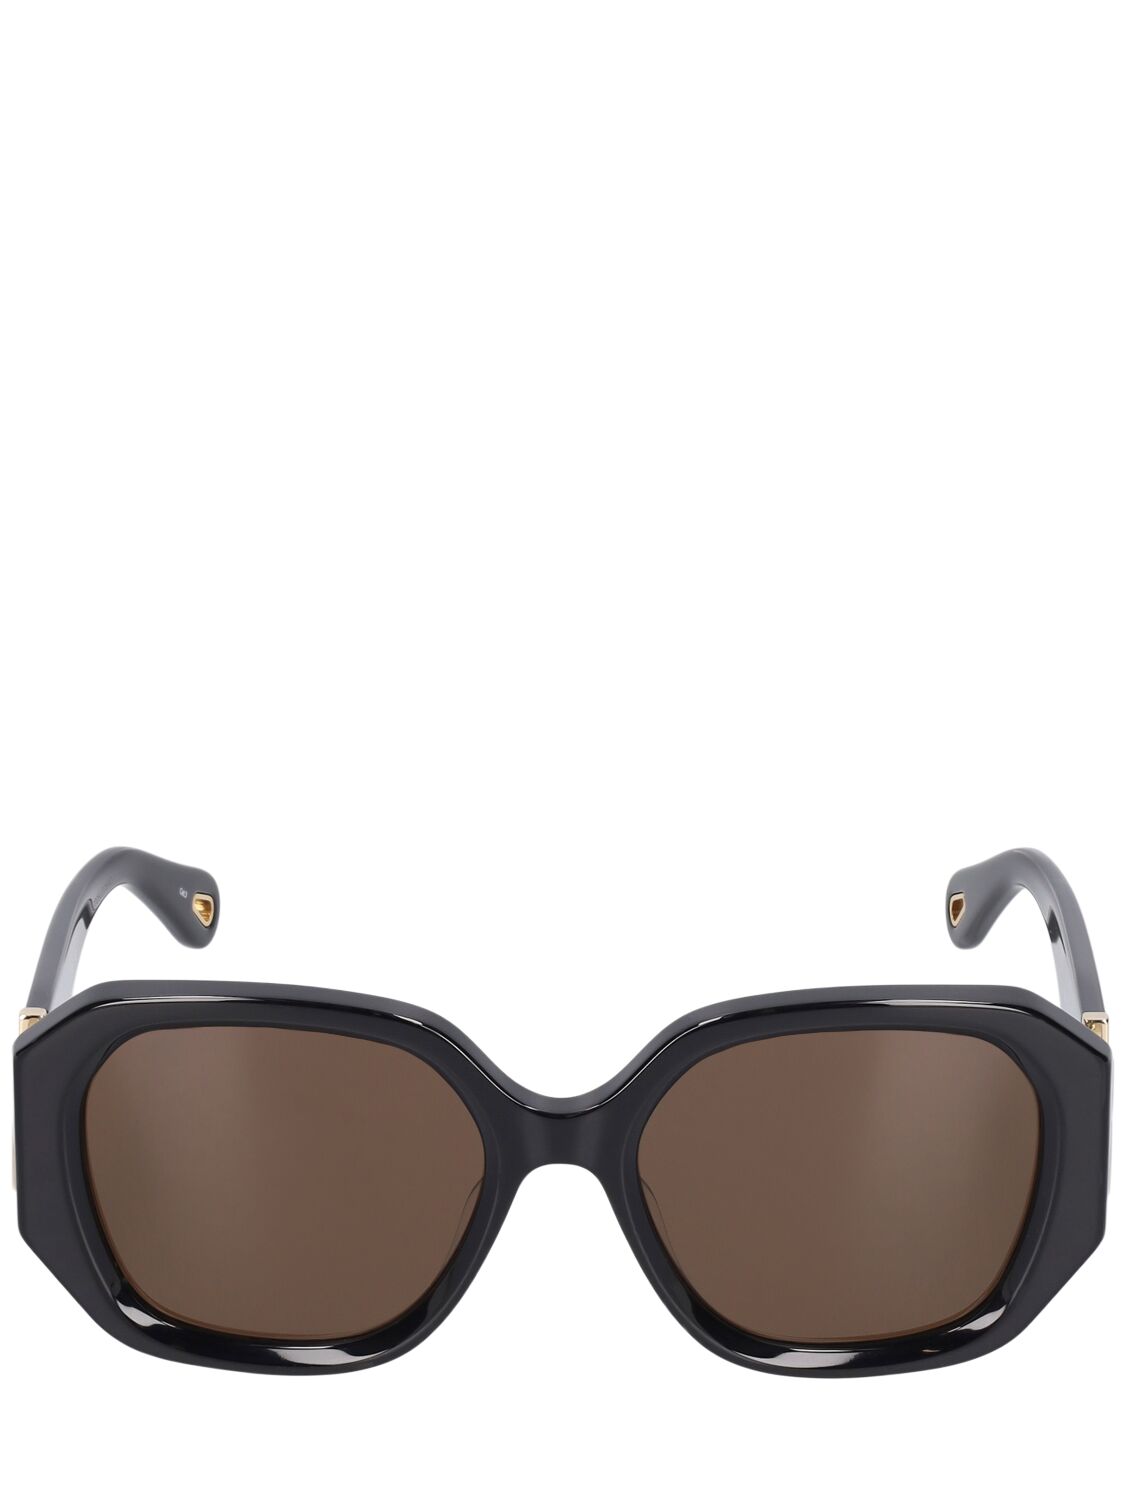 Image of Marcie Squared Bio-acetate Sunglasses